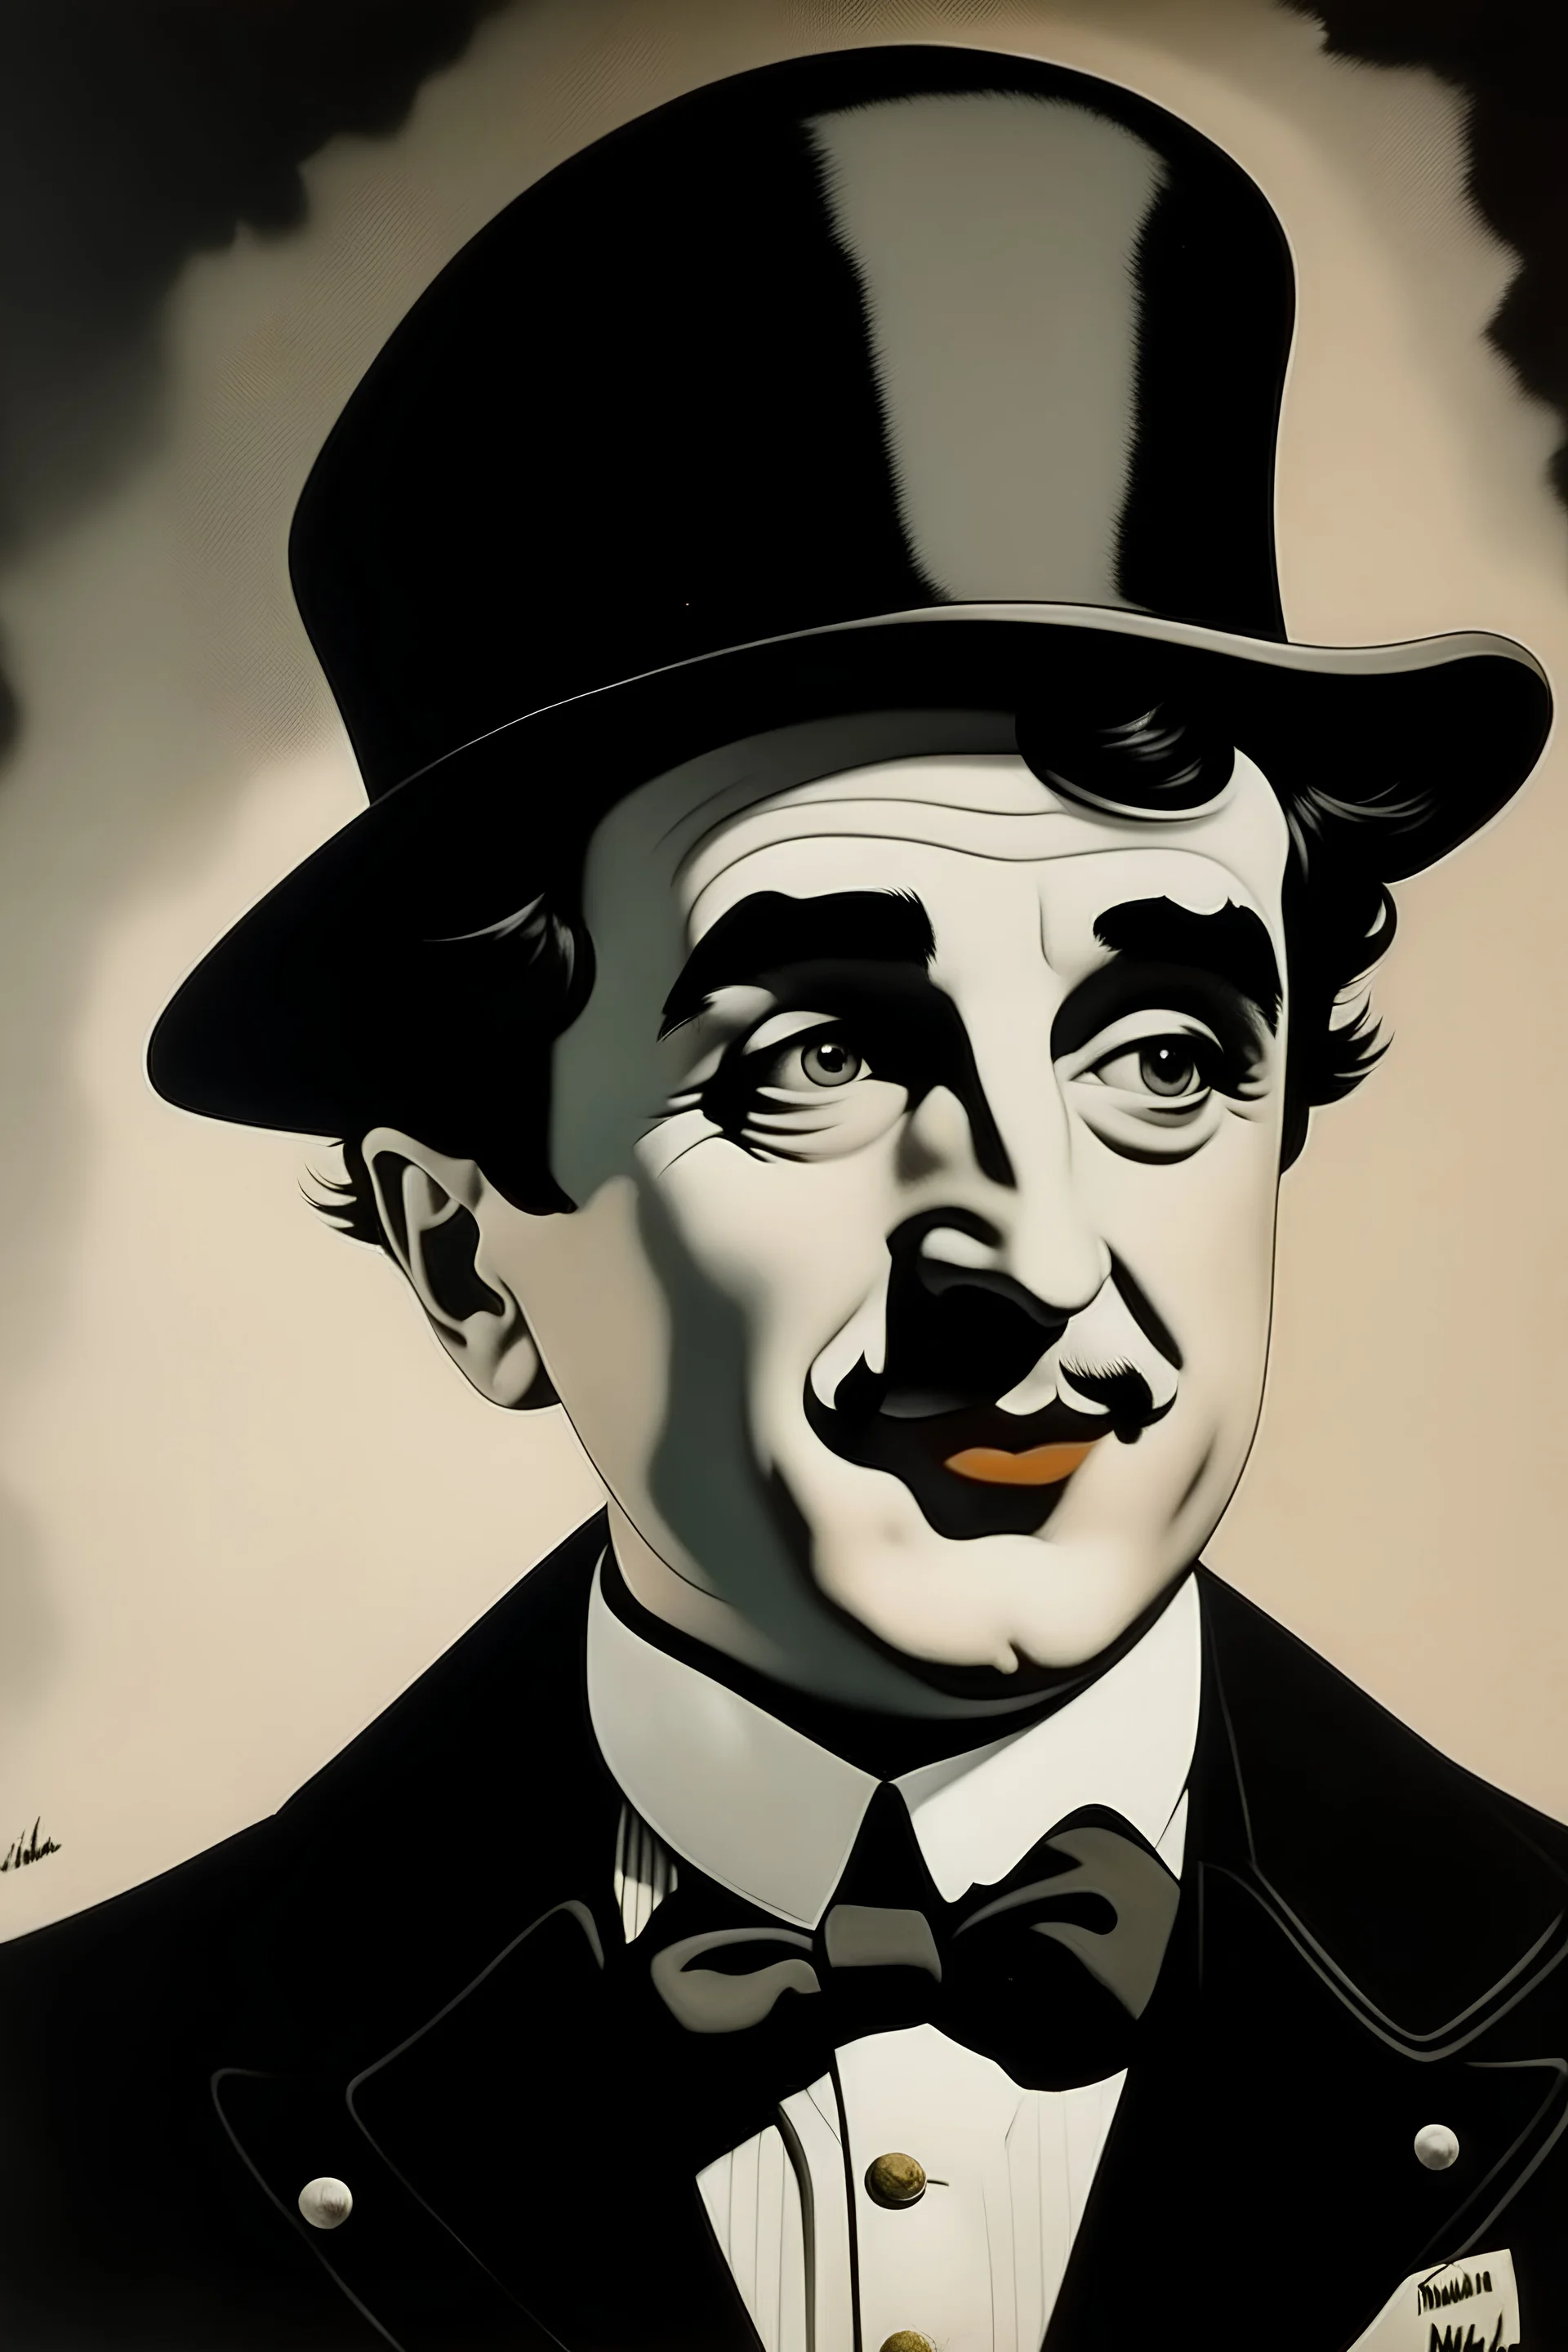 Создай постер про Чарли Чаплина но вместо цилиндра на голове у него должна быть черная кепка с черепом